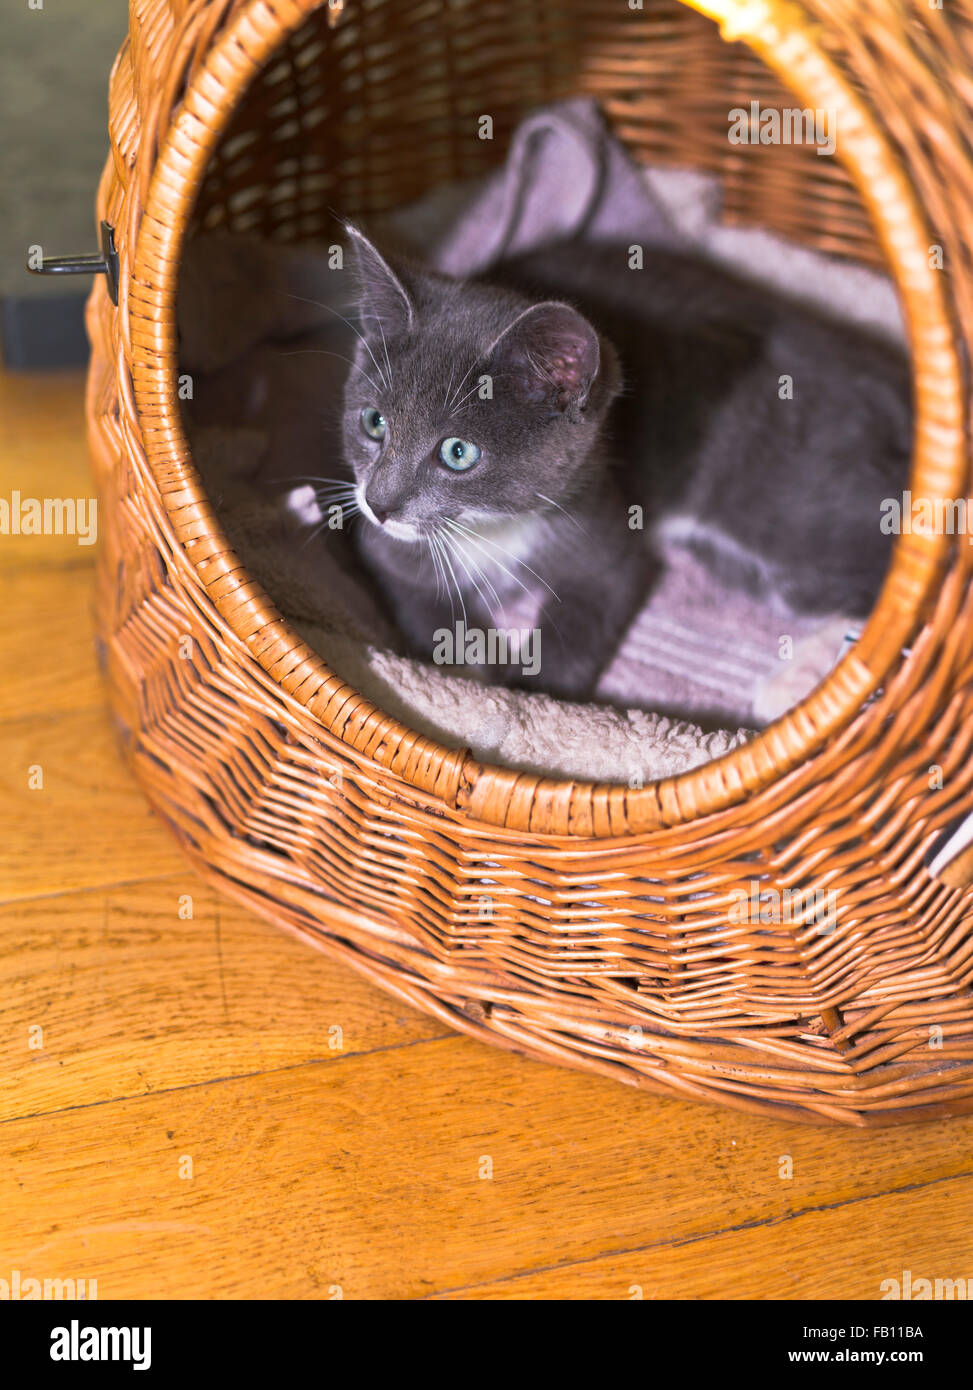 Dh KÄTZCHEN UK junge Kätzchen im Korb Katzenkorb nettes Gesicht inländischen Stockfoto